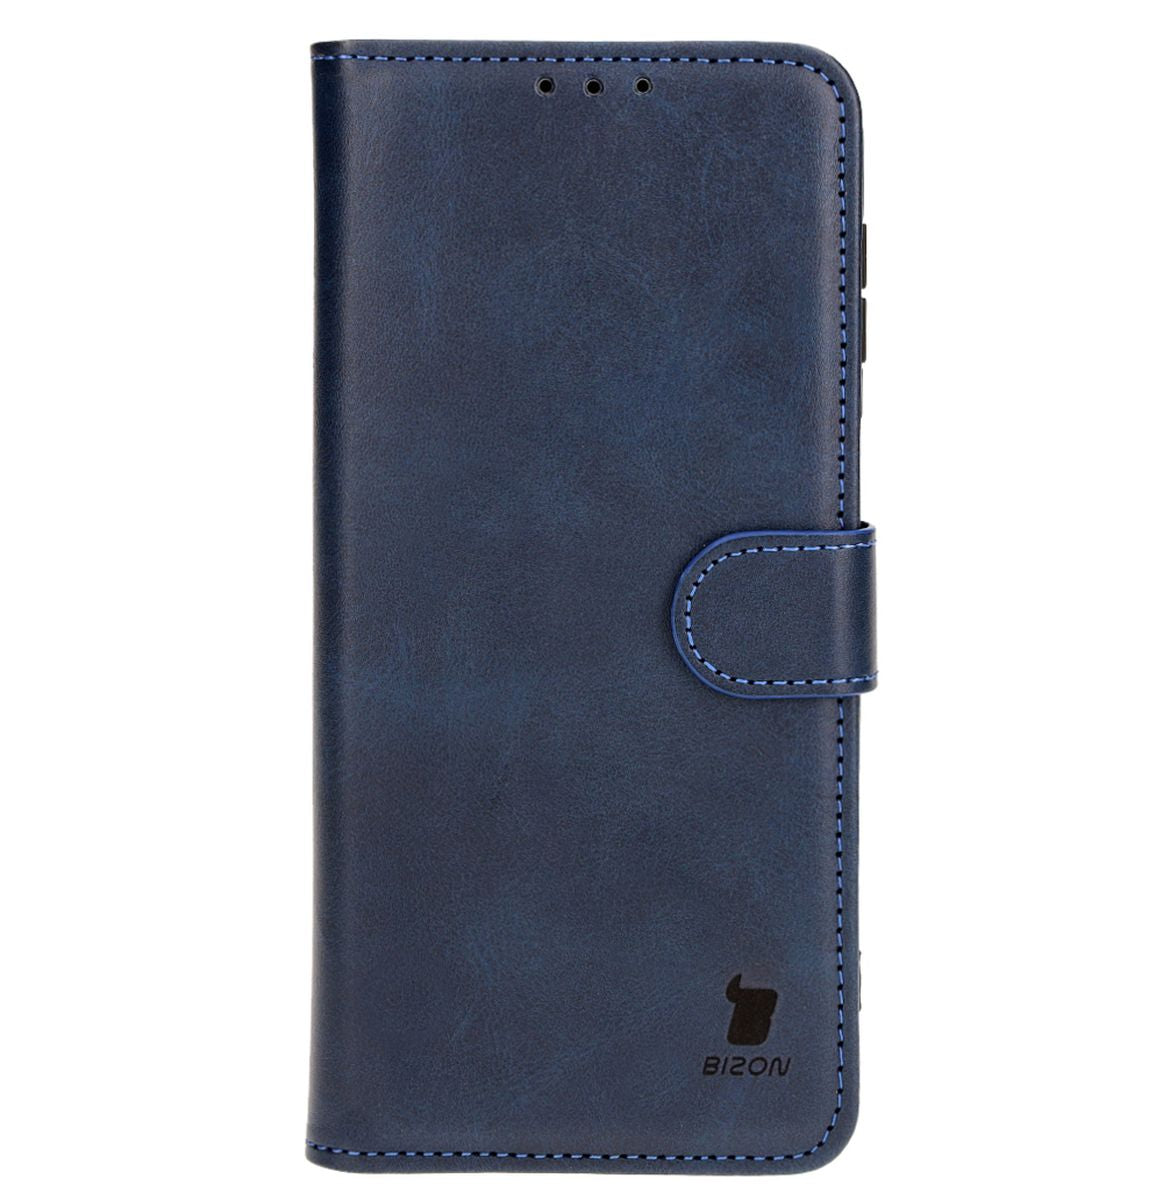 Schutzhülle Bizon Case Pocket für Samsung Galaxy M34 5G, Dunkelblau